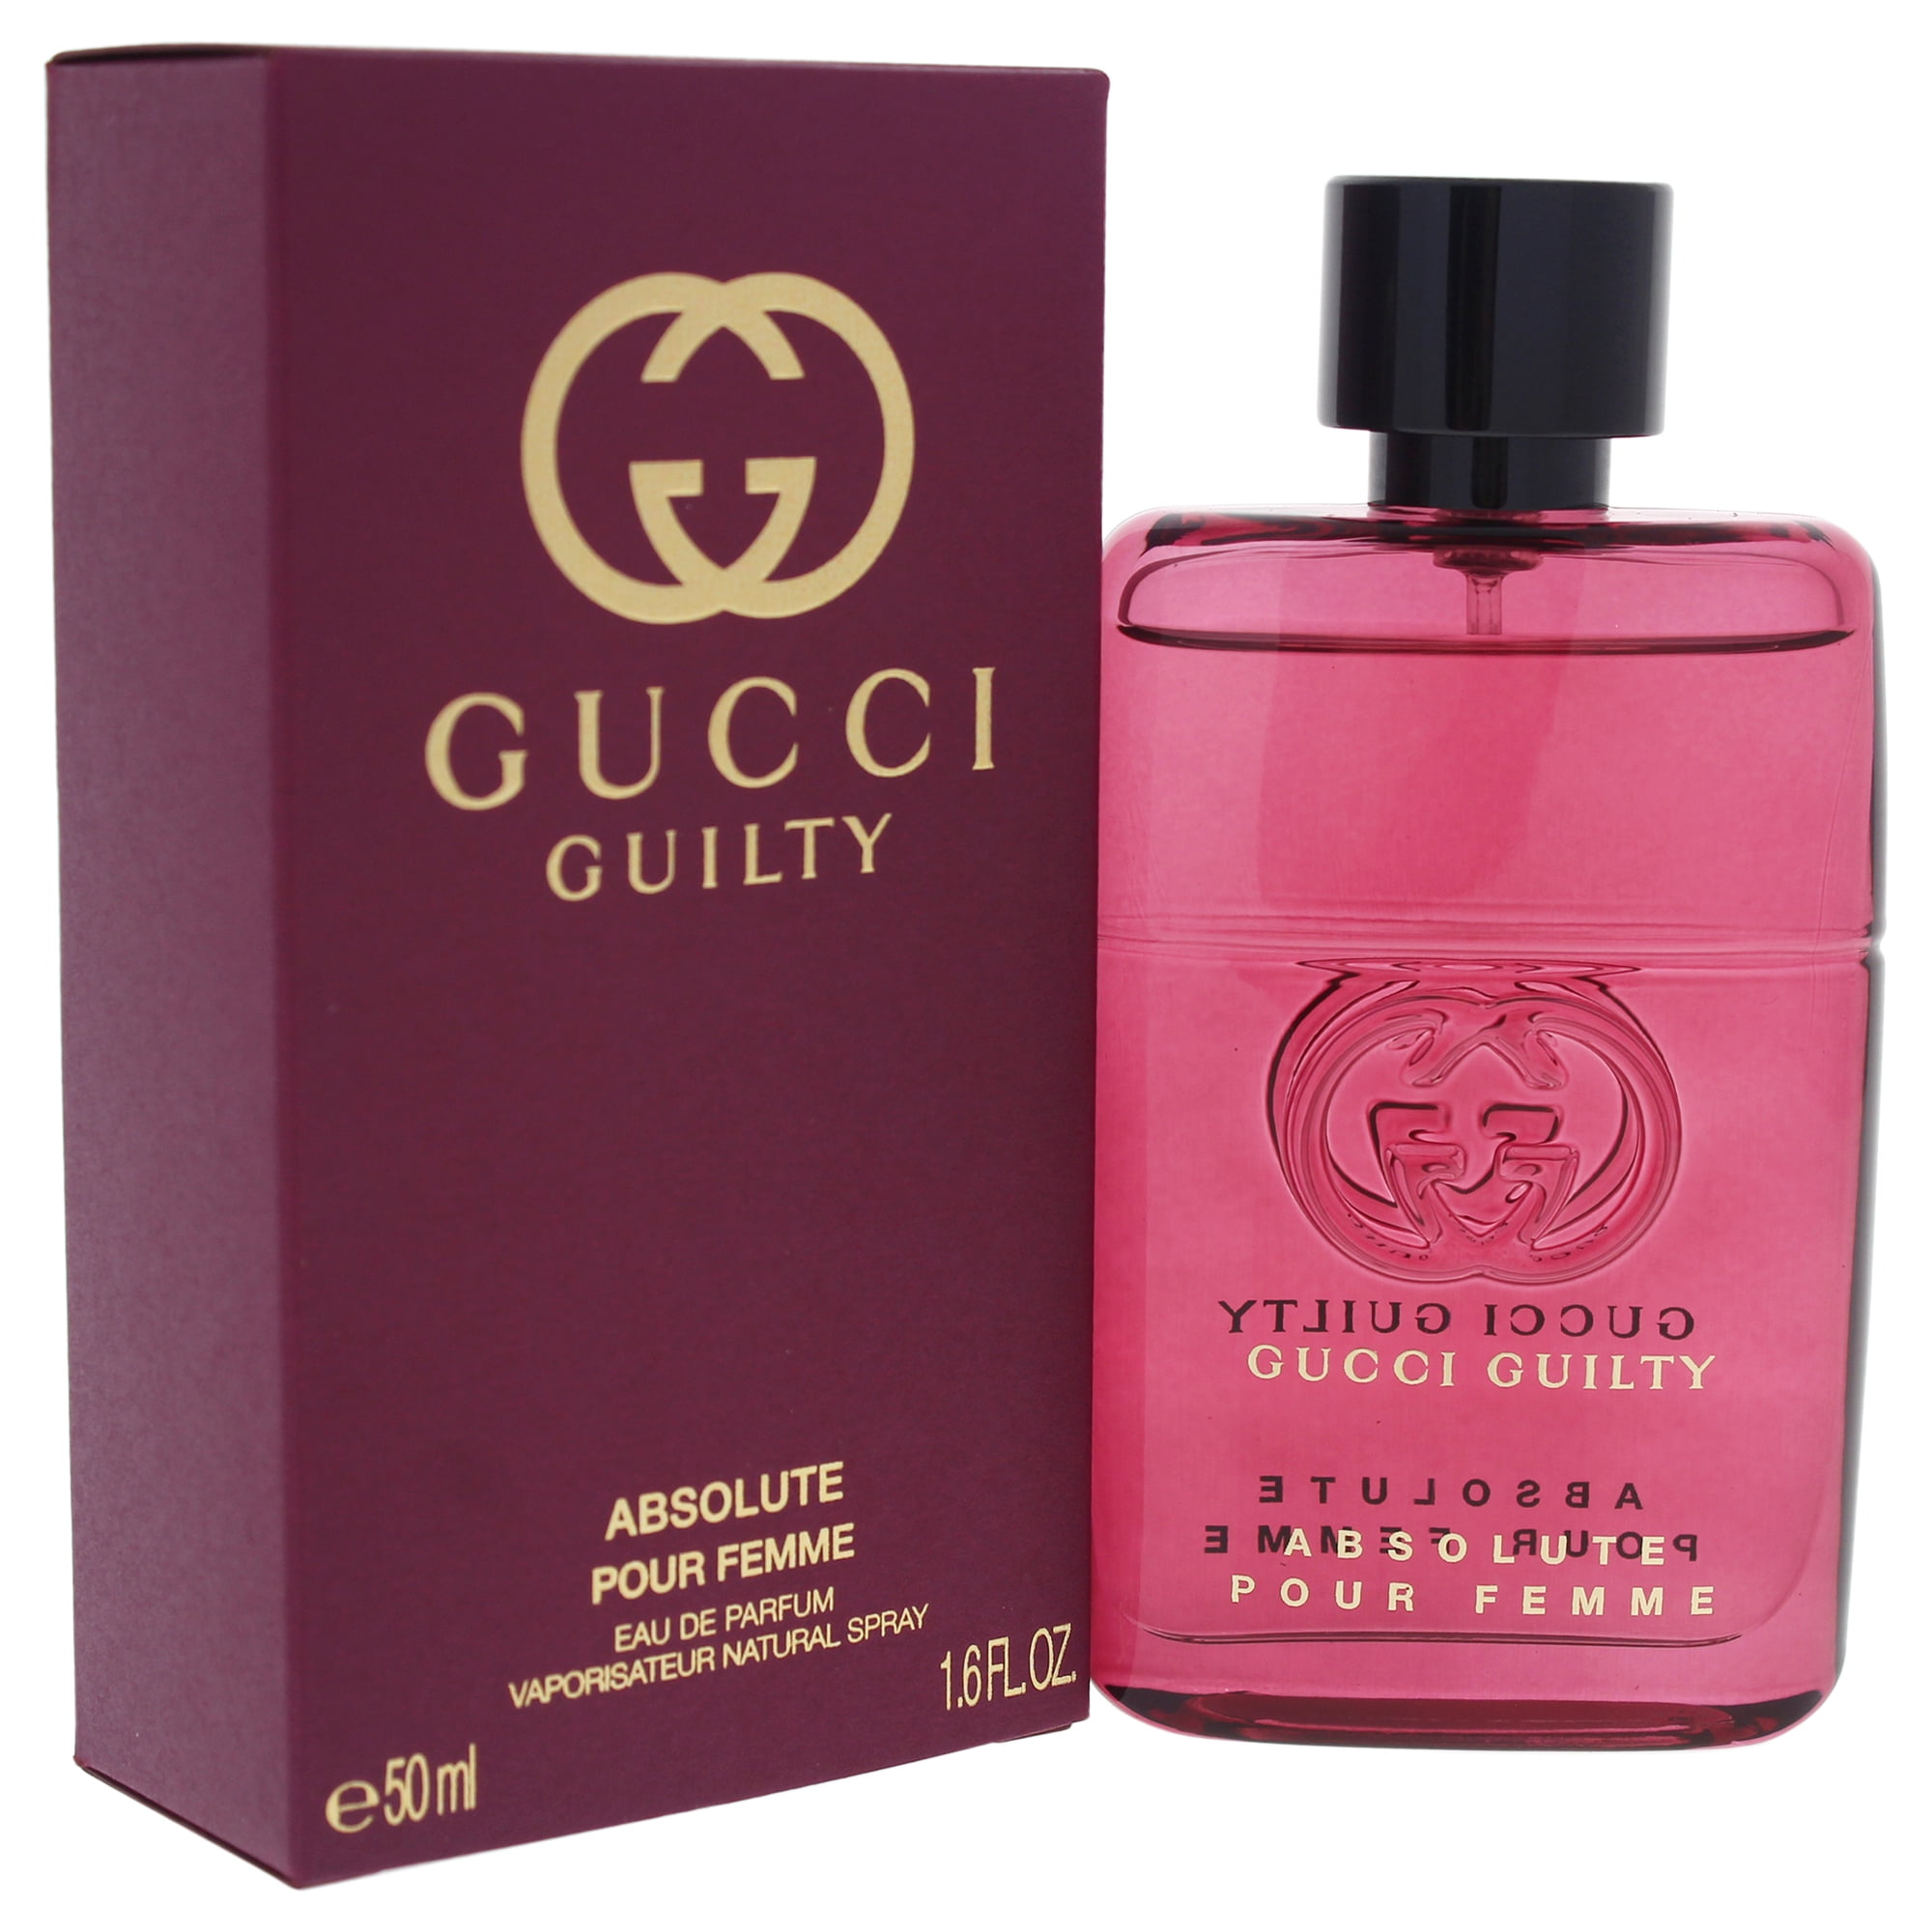 Gucci Guilty Absolute Pour Femme 1.6 oz Eau de Parfum Spray